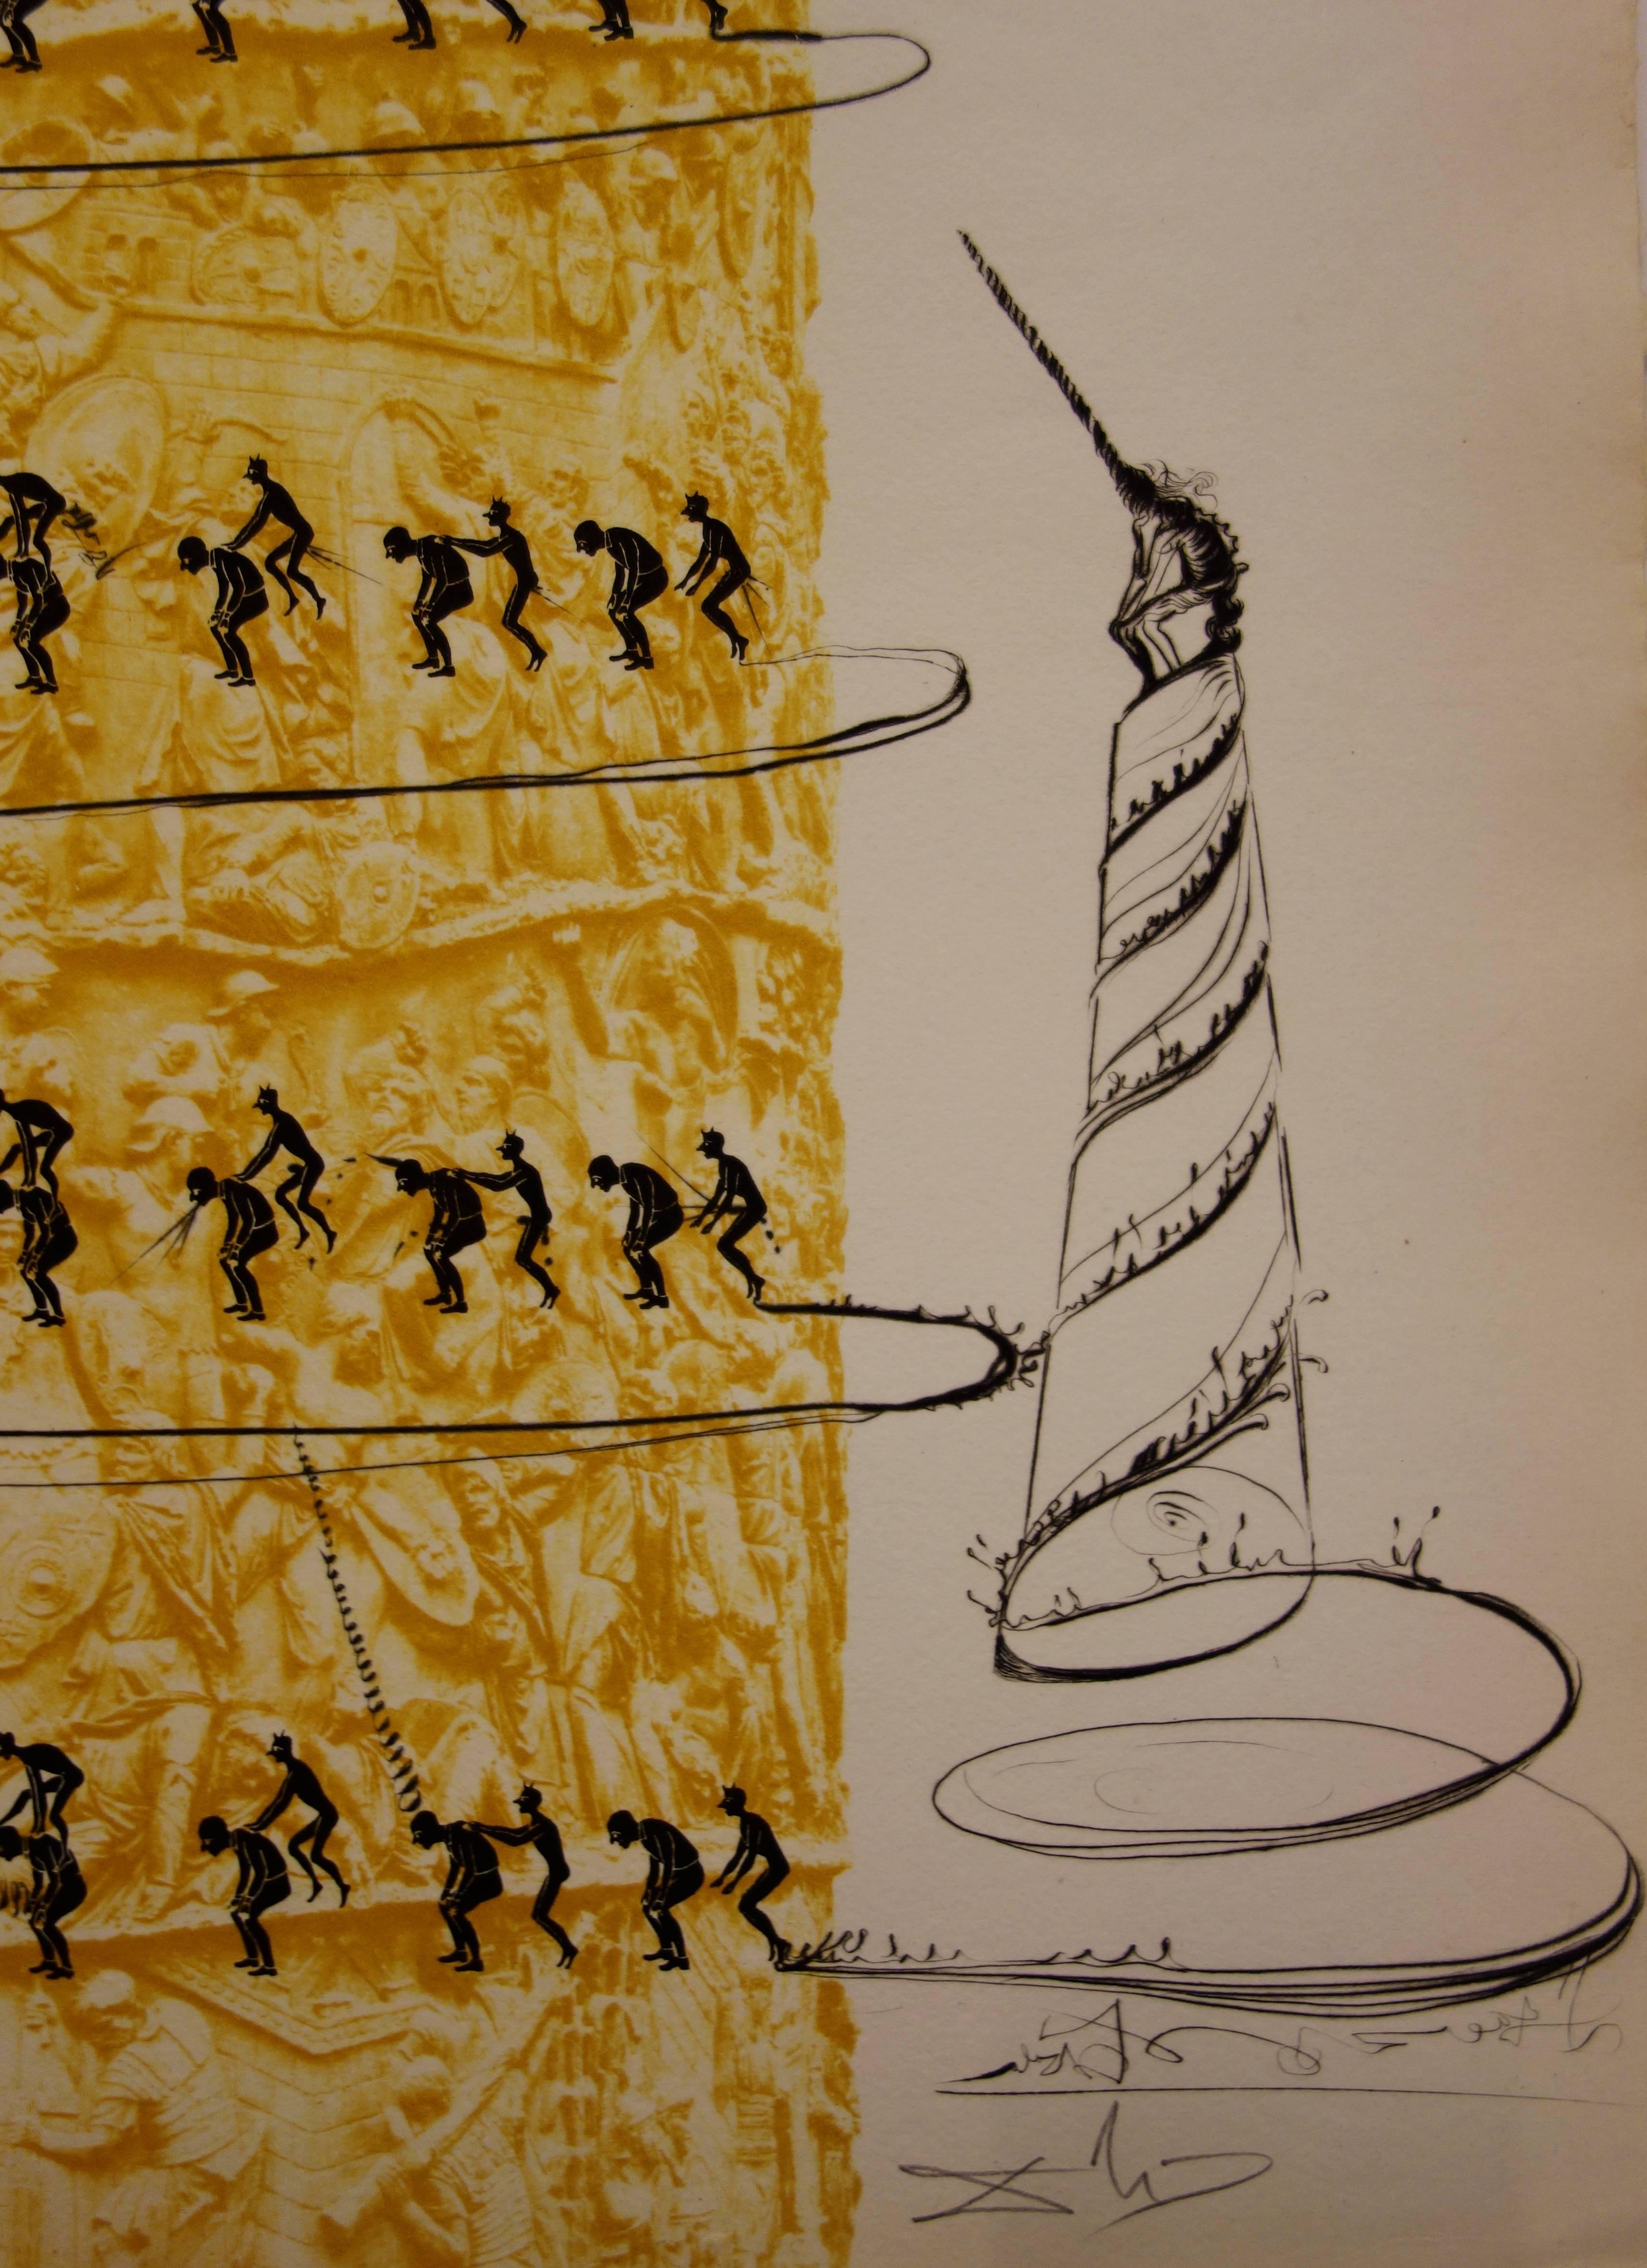 Le système caga y menja - Original etching - 1973 - Surrealist Print by Salvador Dalí